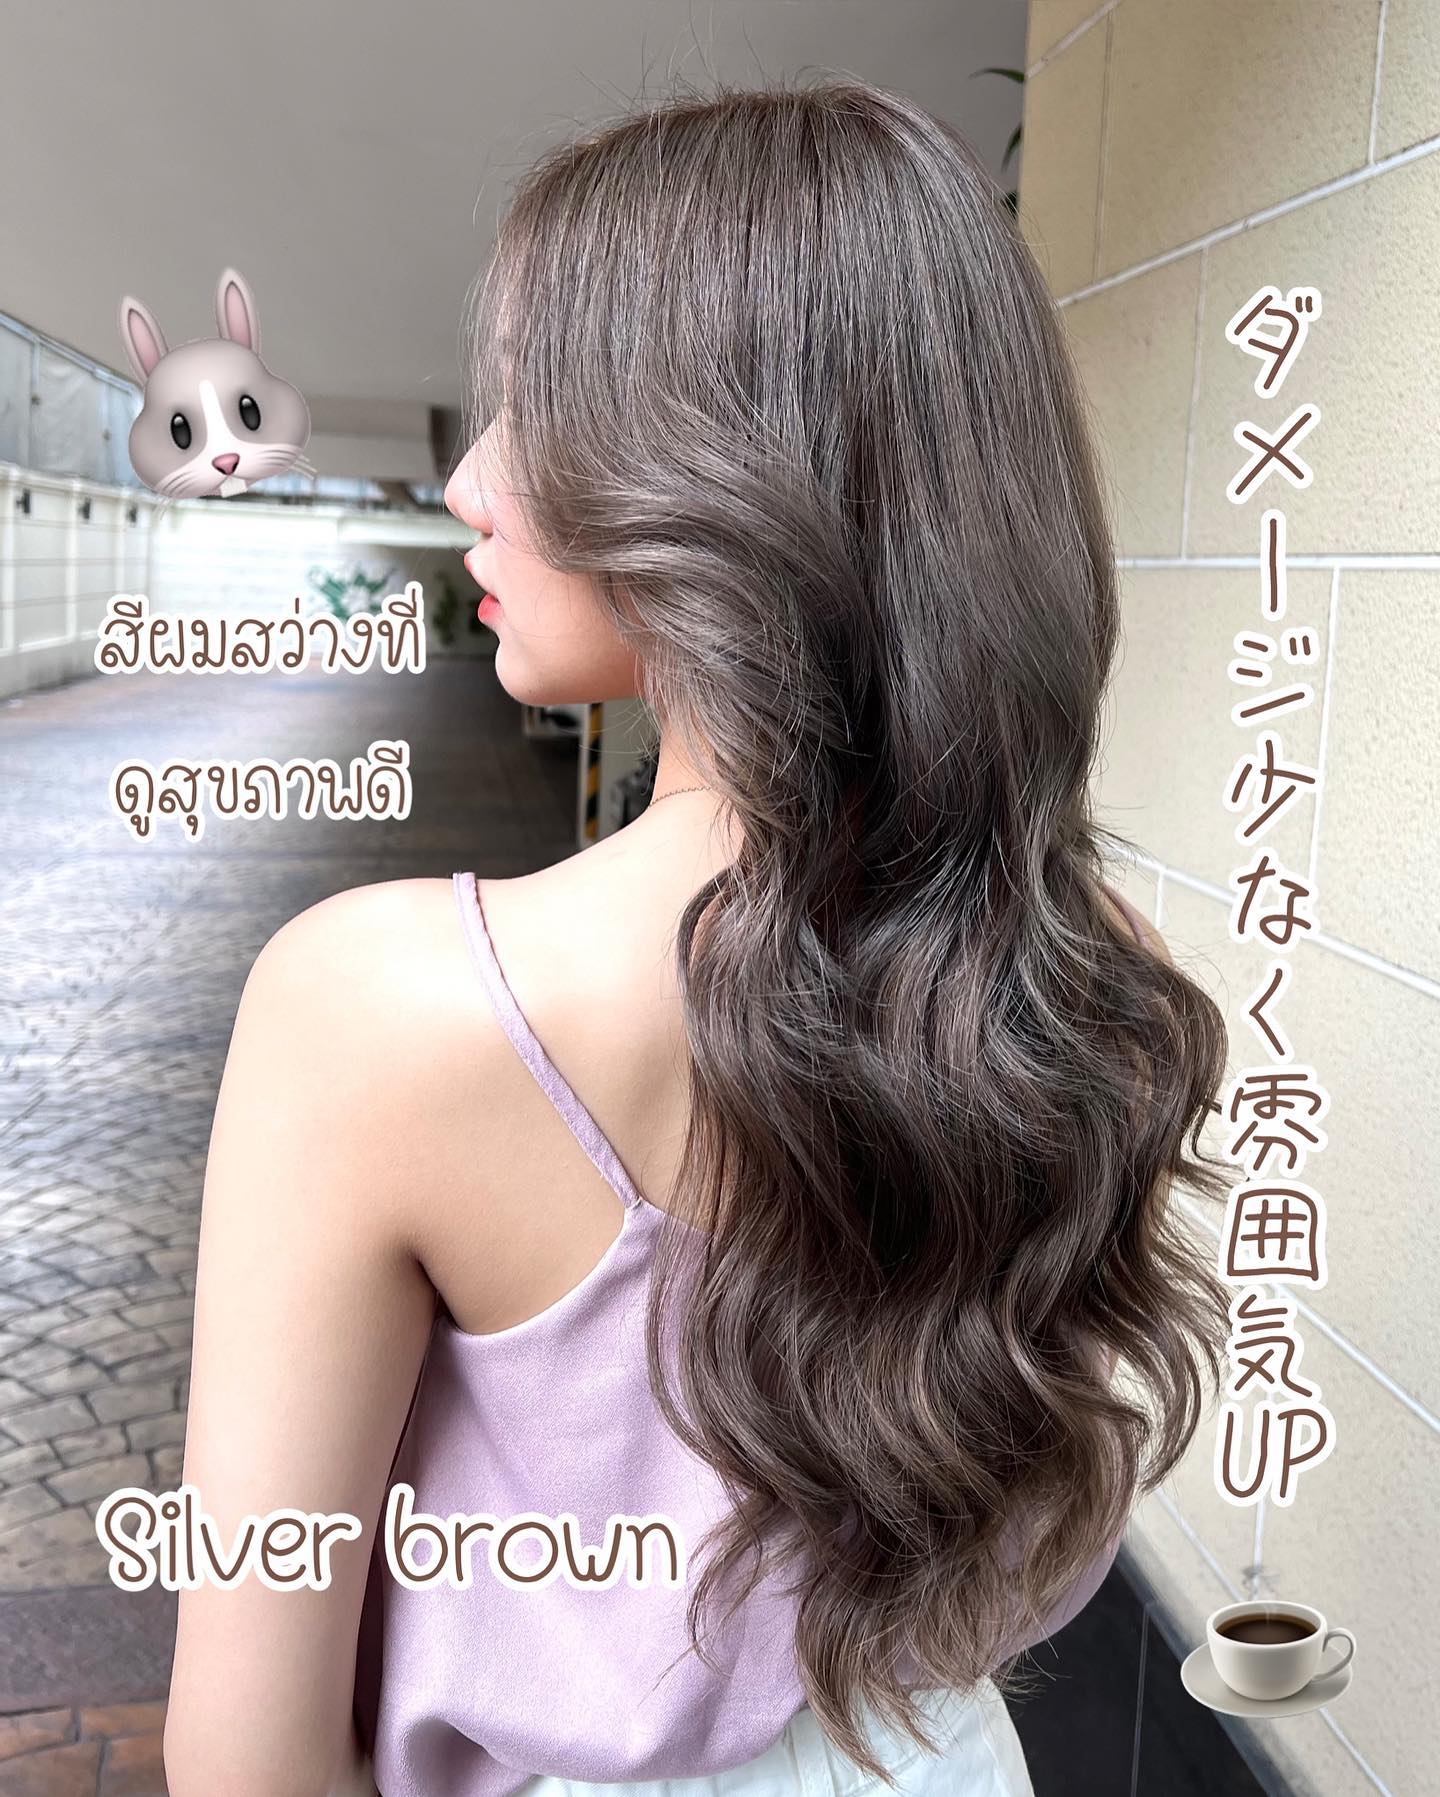 ฟอกสีผมอาจจะทำให้ผมแลดูแห้งเสีย สามารถทำสี Silver Brown เพื่อให้ผมกลับมาสวยและดูสุขภาพดีได้ค่ะ️  Stylist Yamada  YAMS hair&cafe  For booking/ご予約、お問い合わせ↓
LINE ID:@qai5573z
Tel:02-163-4973  Business hours/営業時間↓
9:00 - 18:00
Closed on Wednesday,2nd & 4th Thursday  #ร้านทำผมญี่ปุ่น #YAMShaircafe #ตัดผมญี่ปุ่น #ยืดผมญี่ปุ่น #ดัดผมญี่ปุ่น #ร้านทำผม #バンコク生活 #バンコク在住 #バンコク暮らし #バンコク子連れ美容室 #バンコク美容室